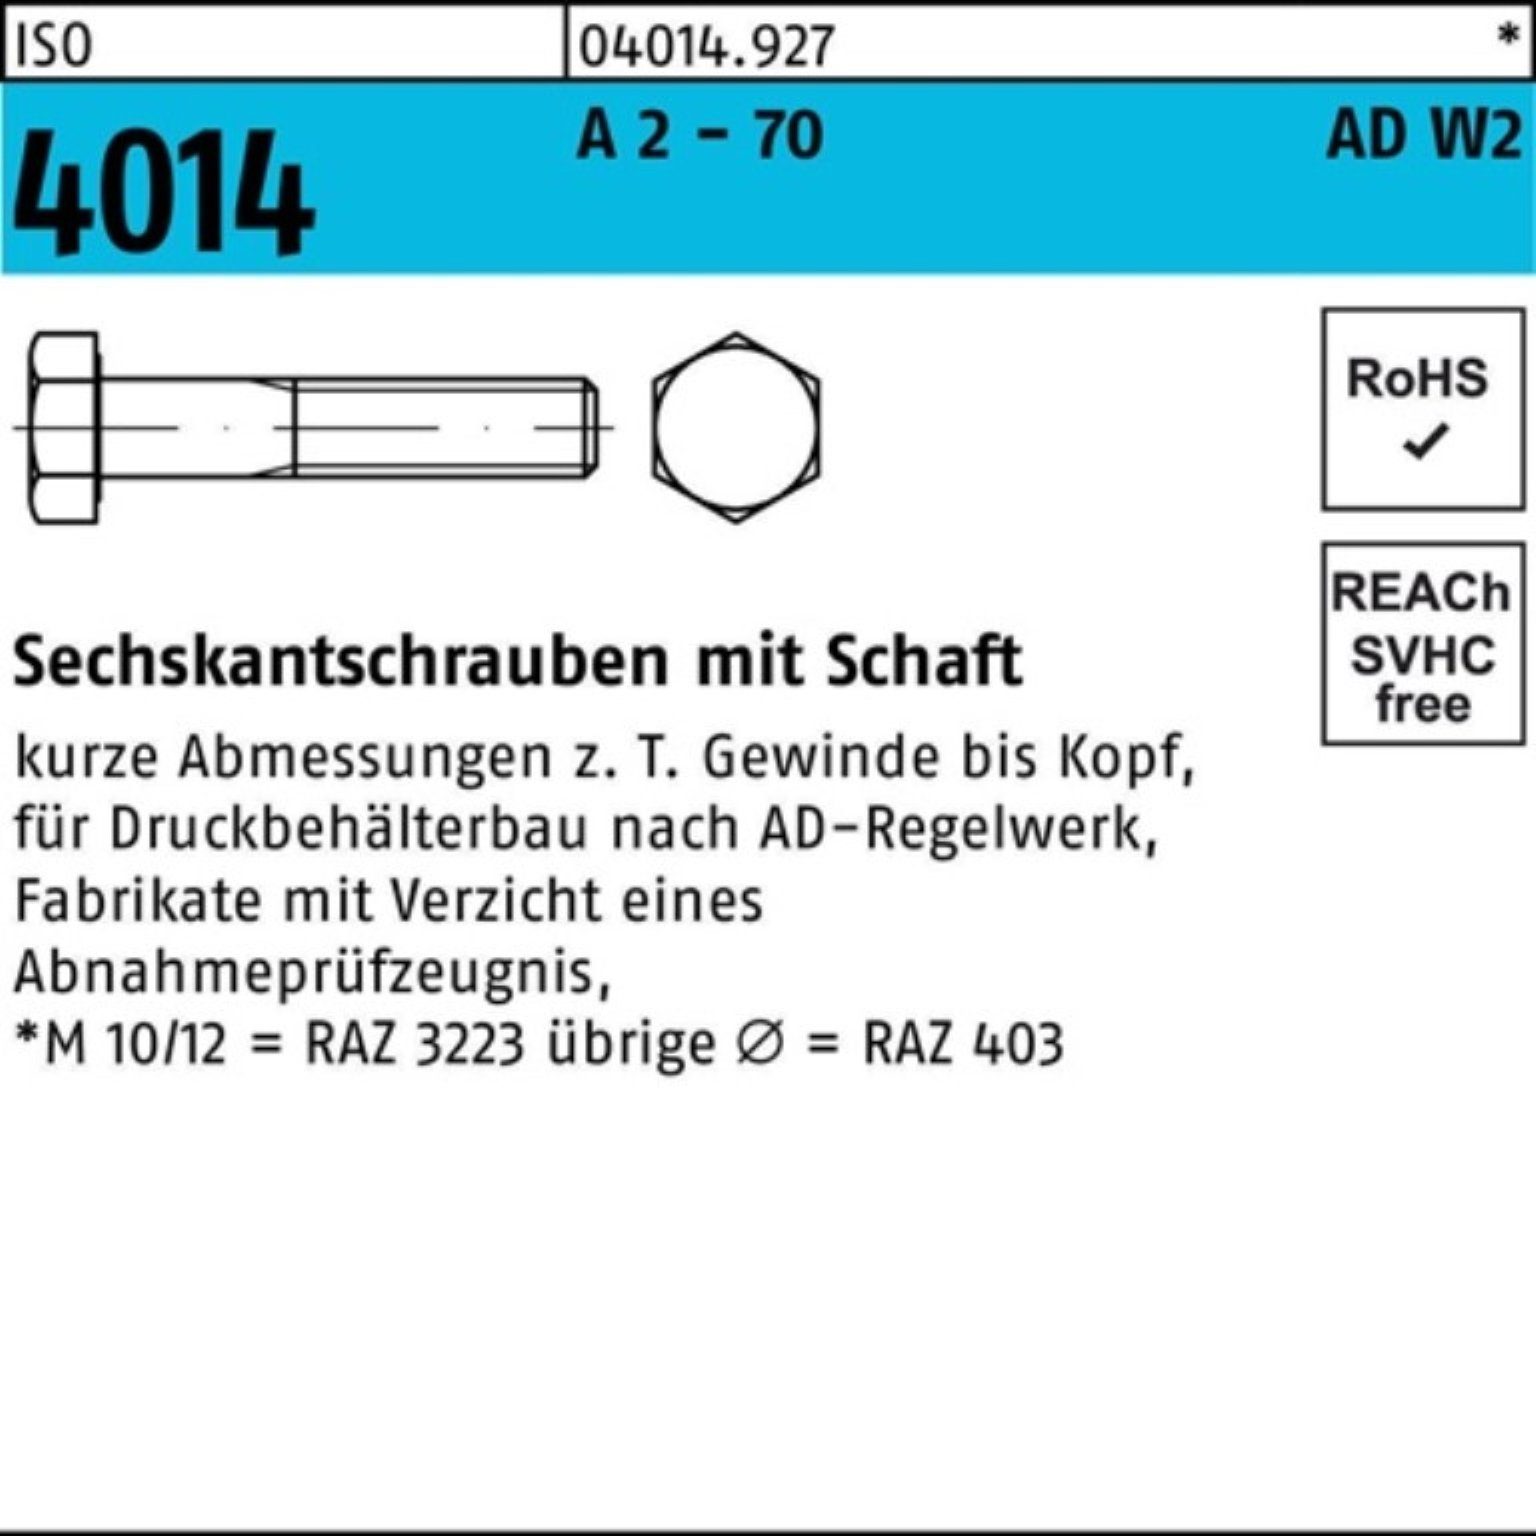 Sechskantschraube 2 100er 130 Sechskantschraube - Bufab AD-W2 4014 ISO Schaft M12x 70 Pack A 2